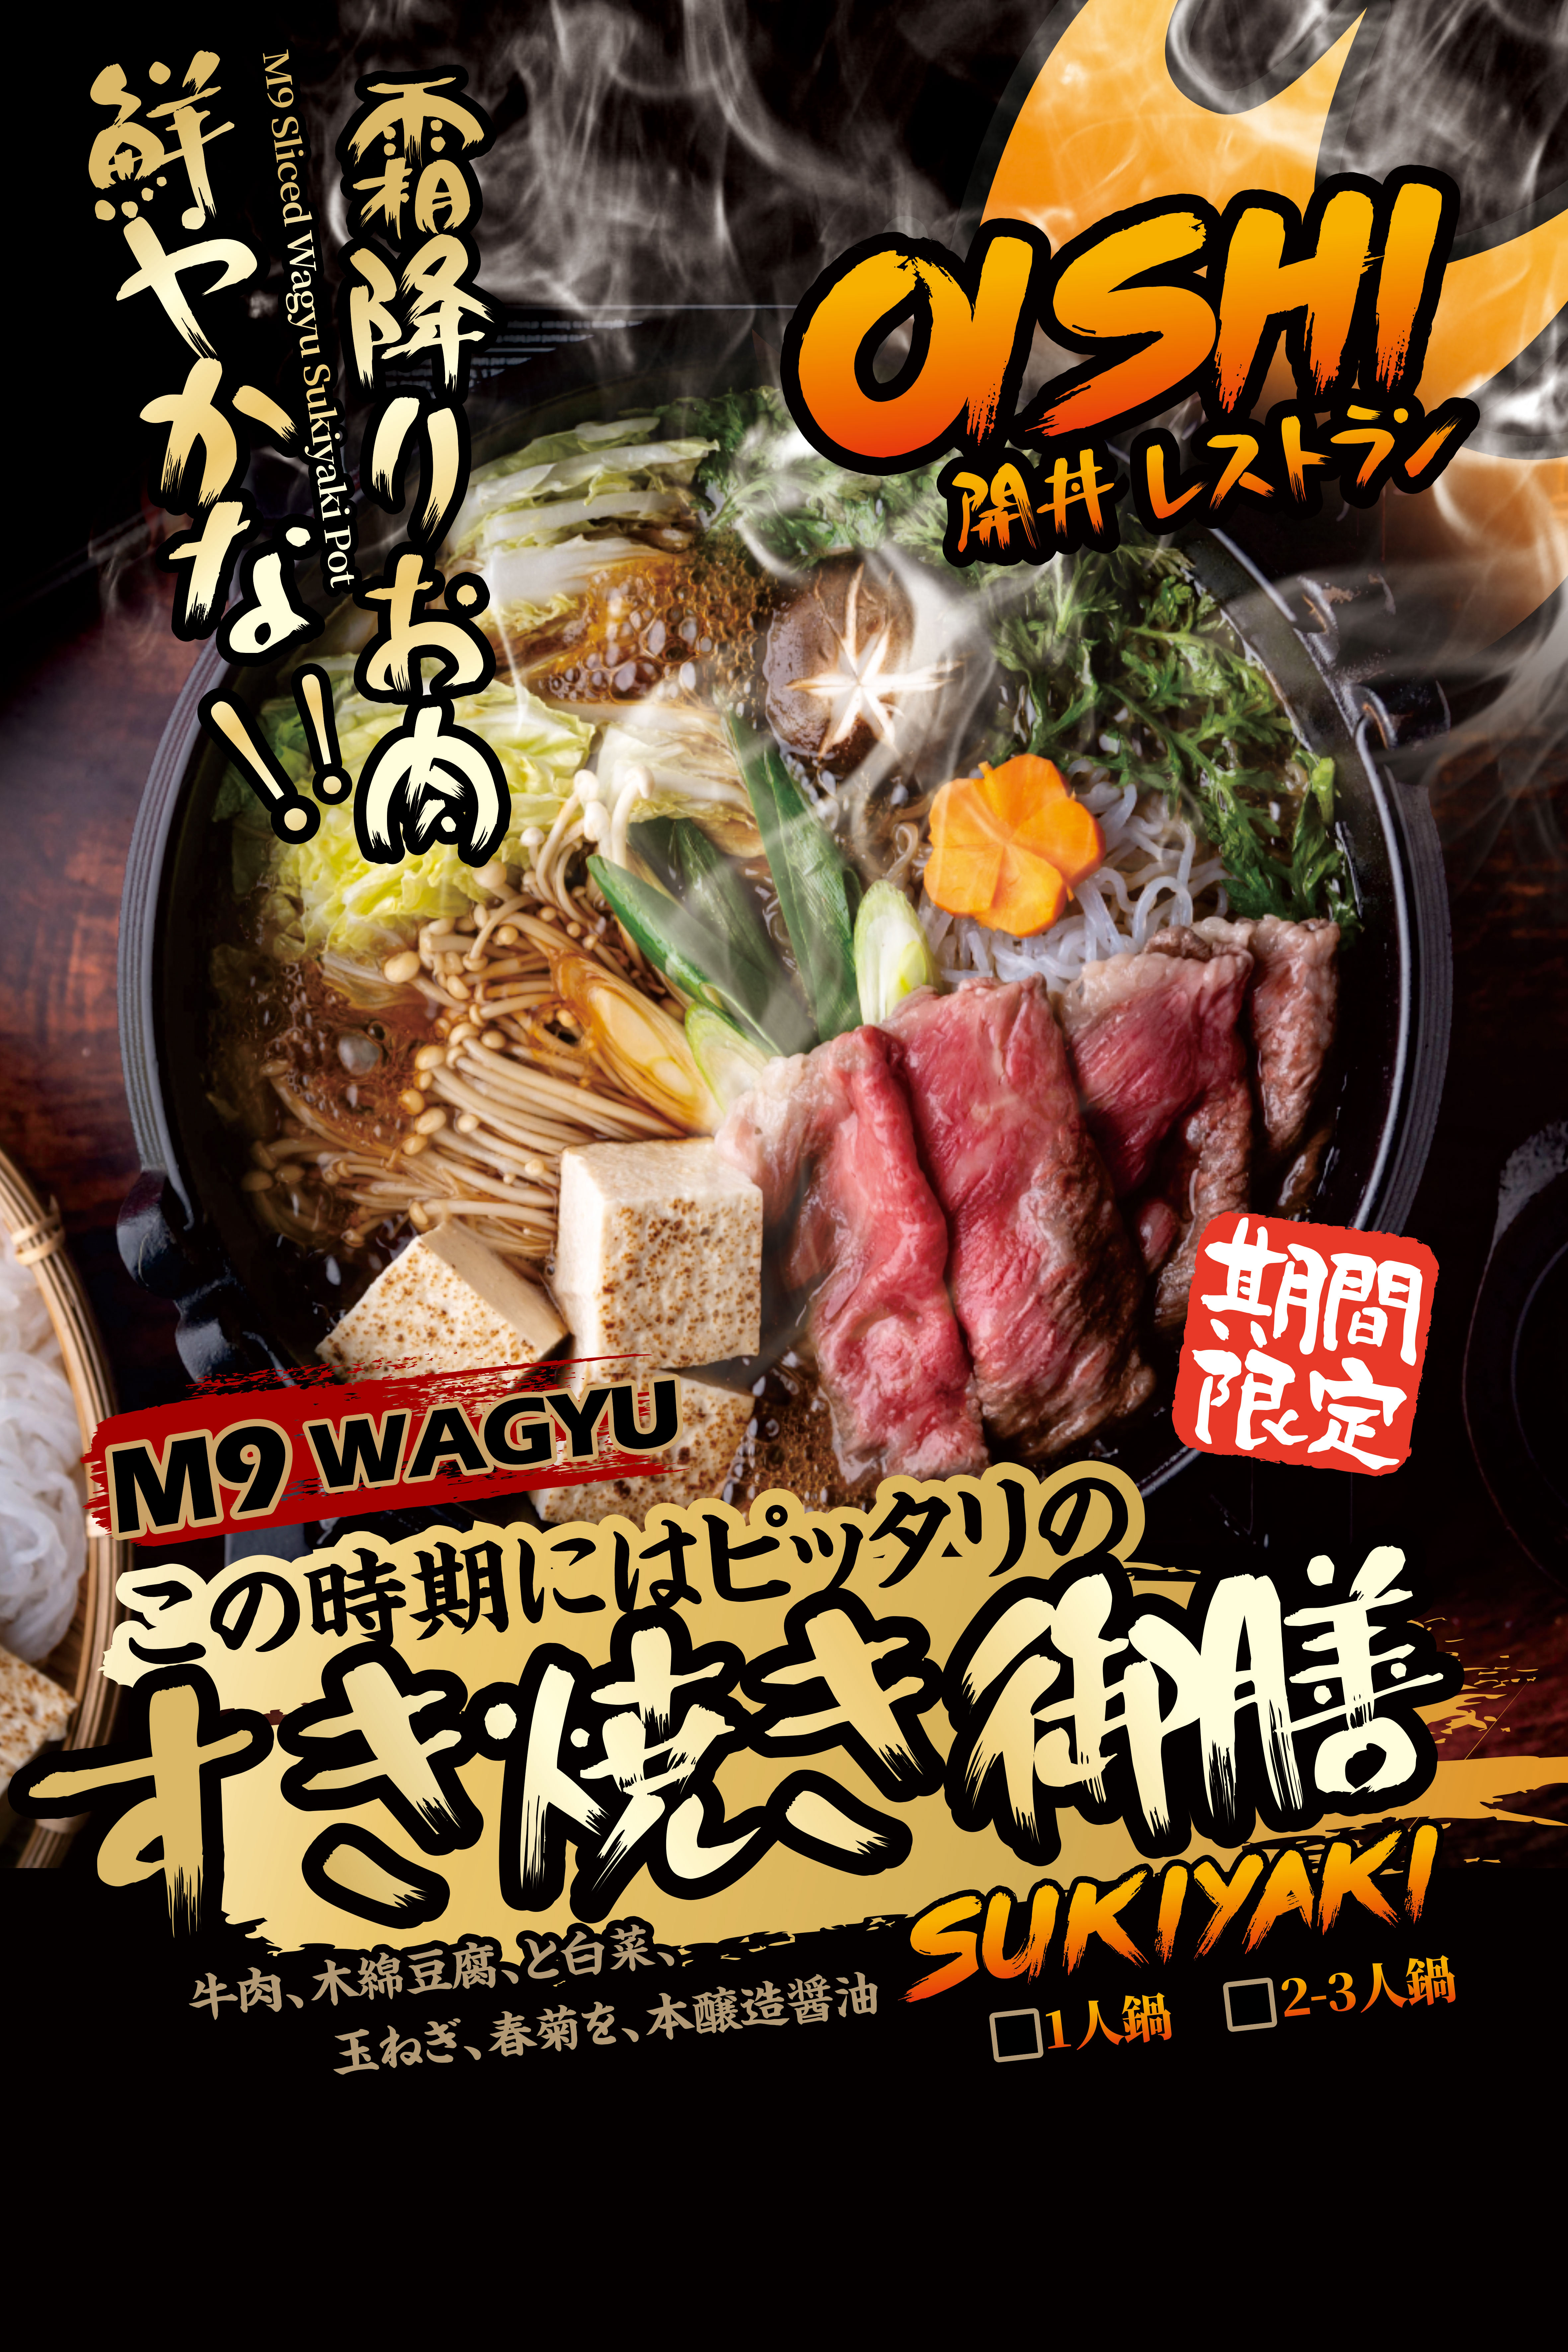 Sukiyaki Pot 